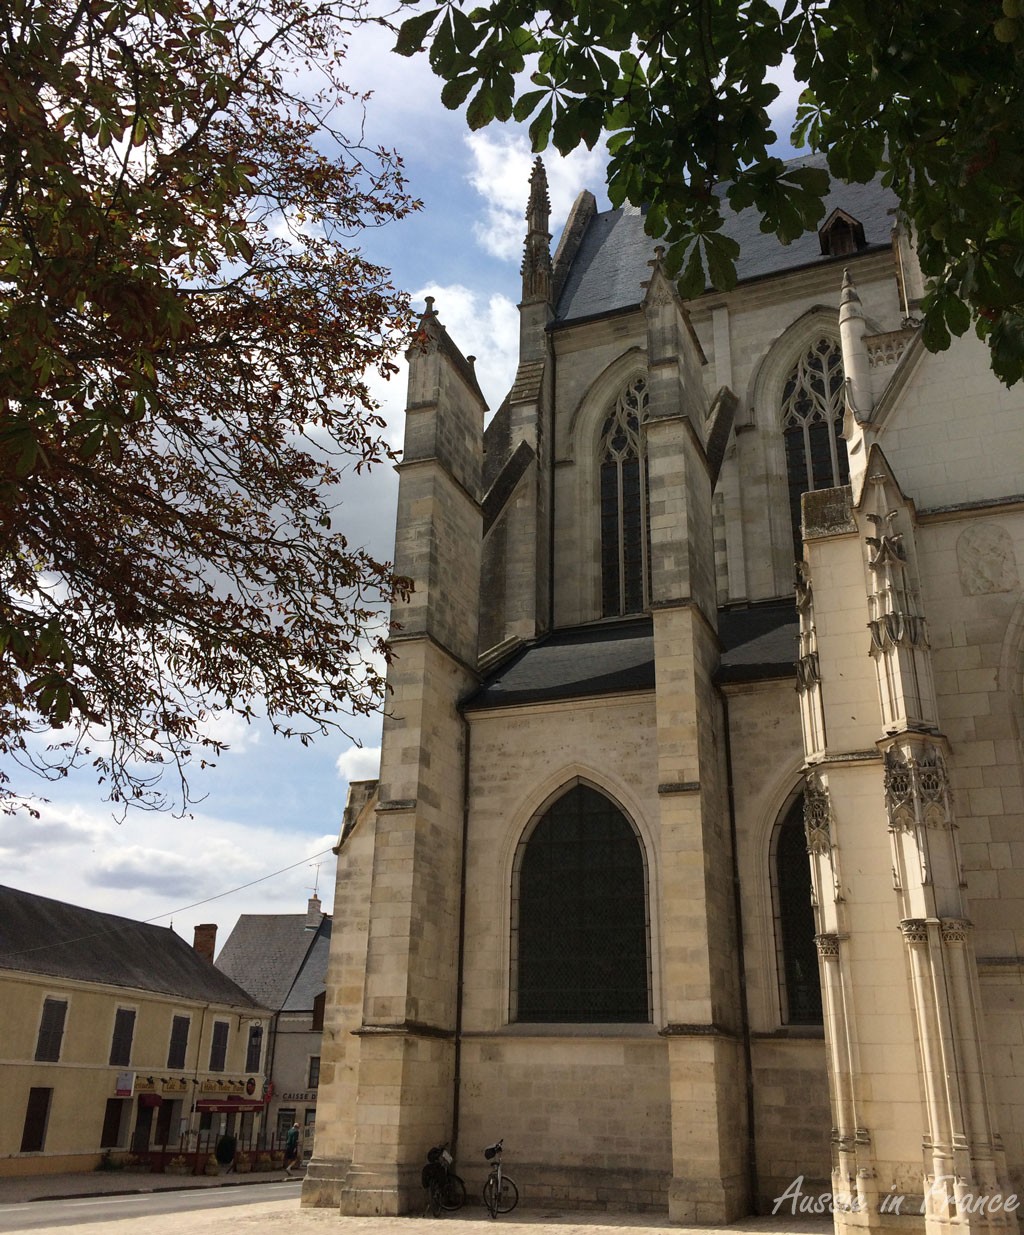 The church of Cléry Saint André